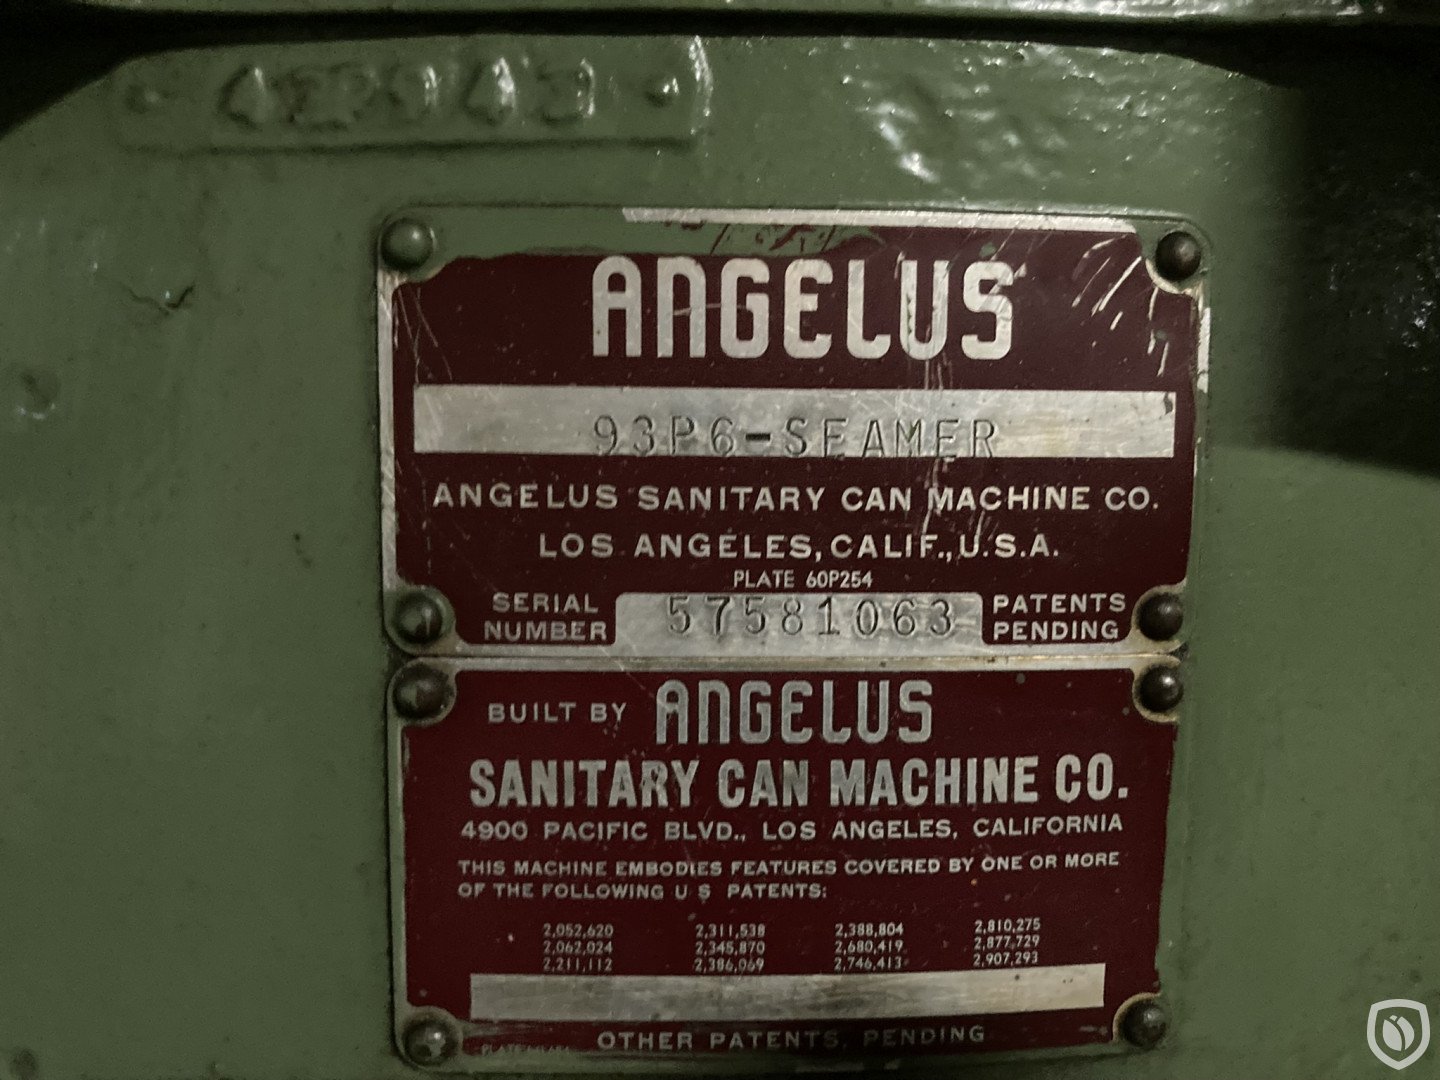 Angelus 93P6